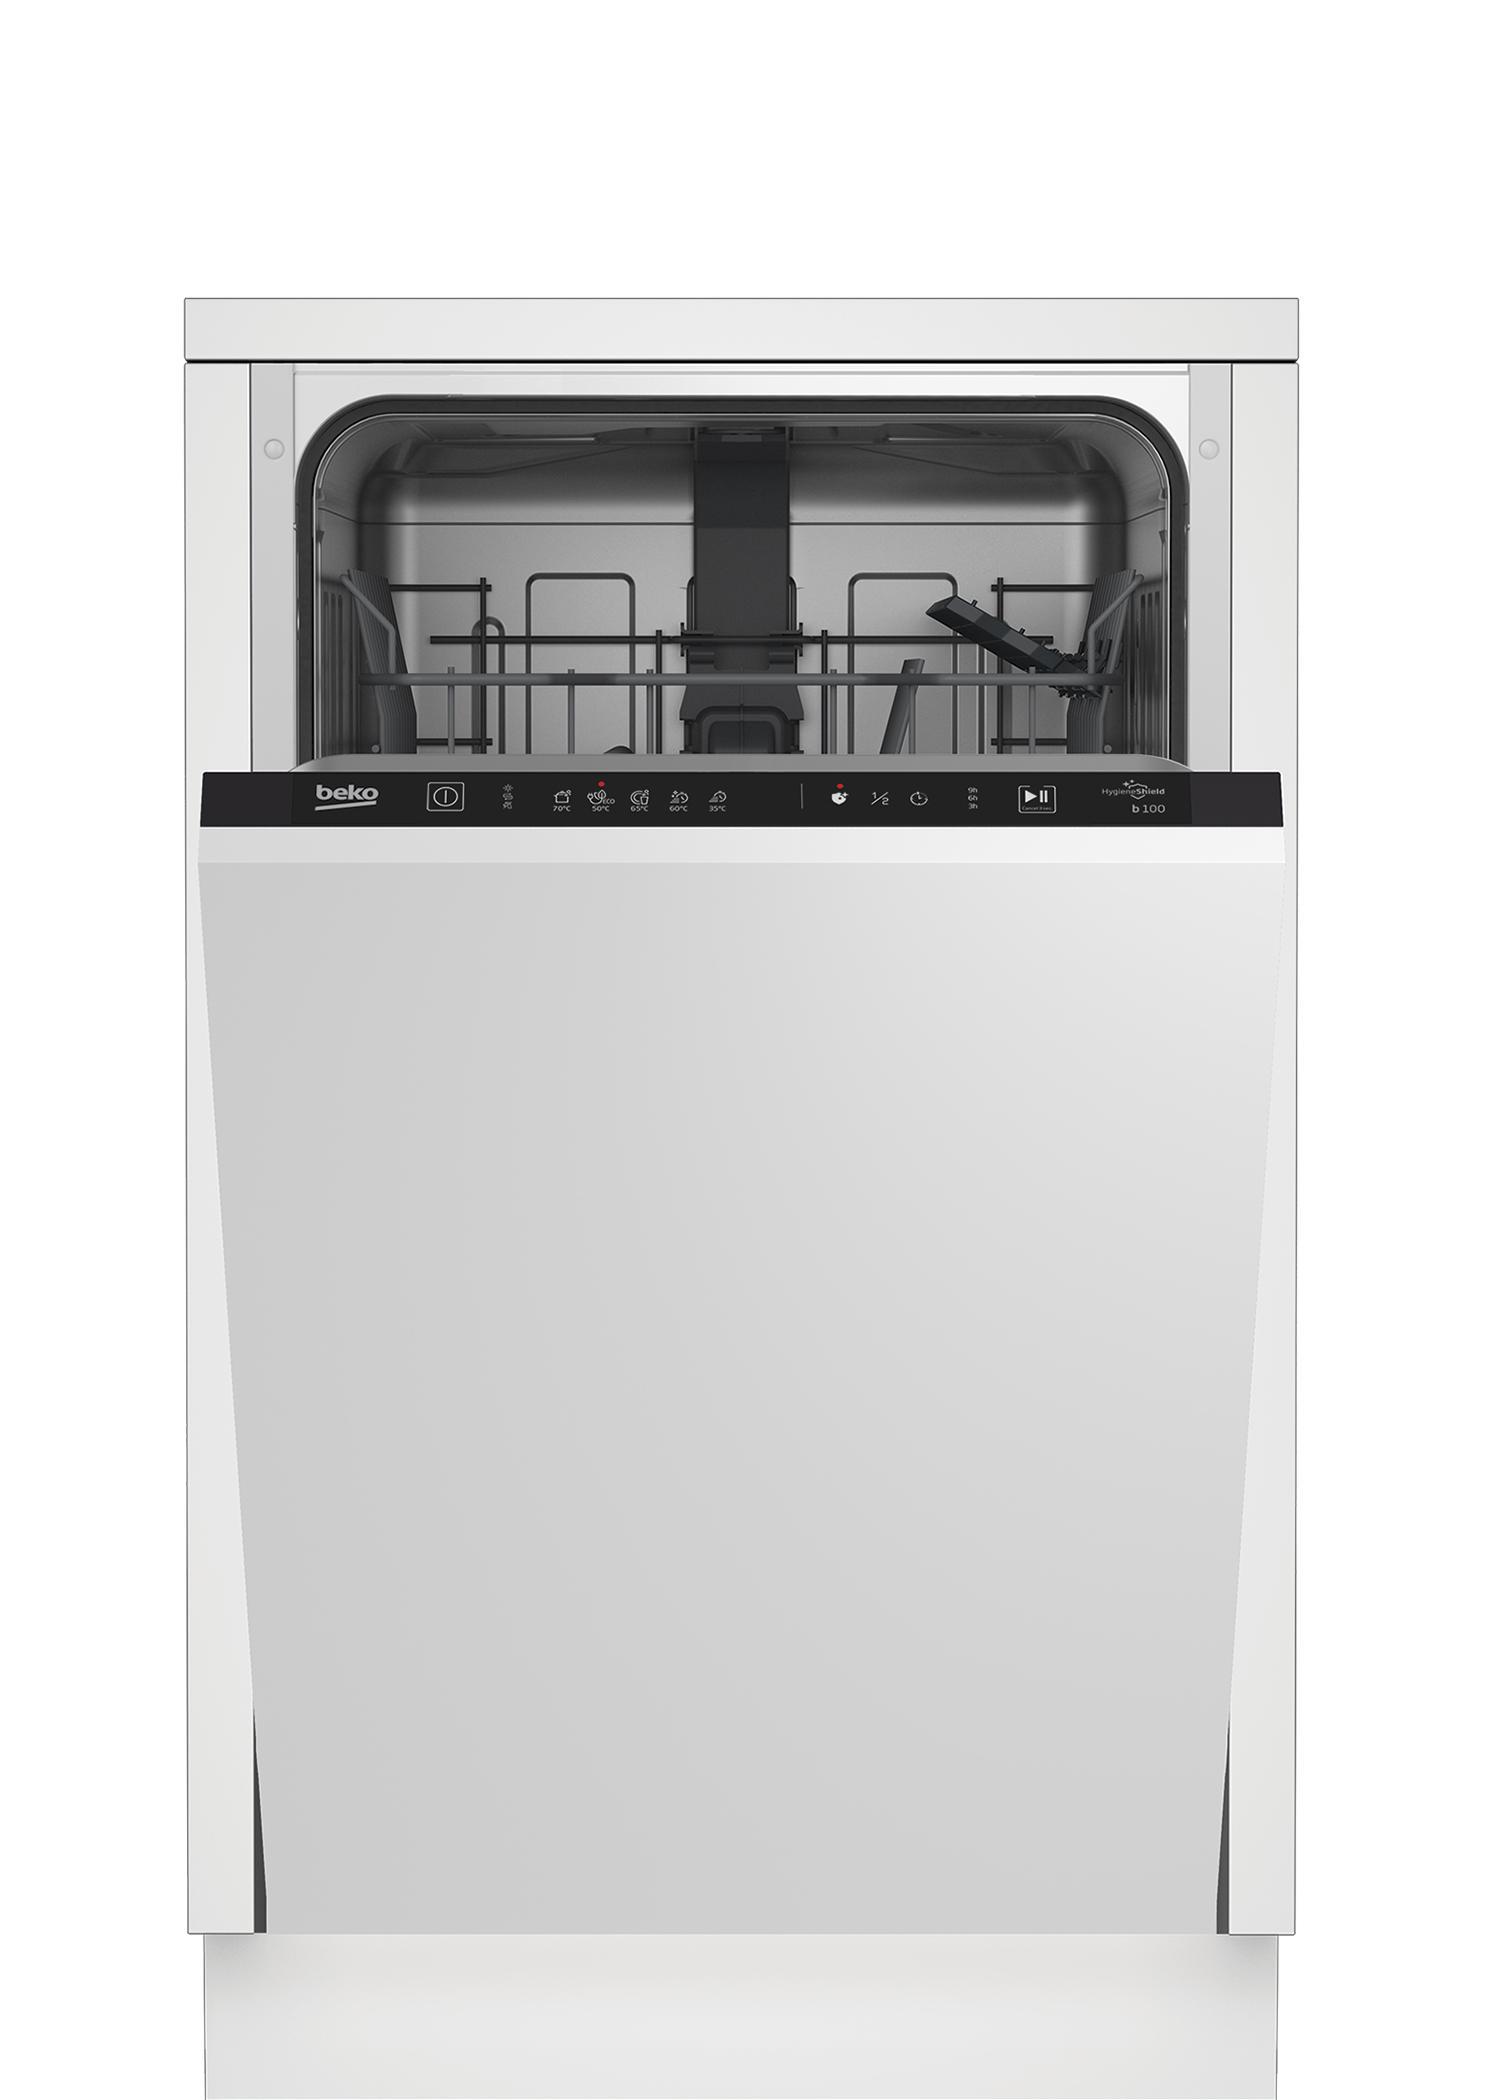 90470659 Встраиваемая посудомоечная машина BDIS15020 44.8 см 5 программ цвет белый STLM-0239743 BEKO